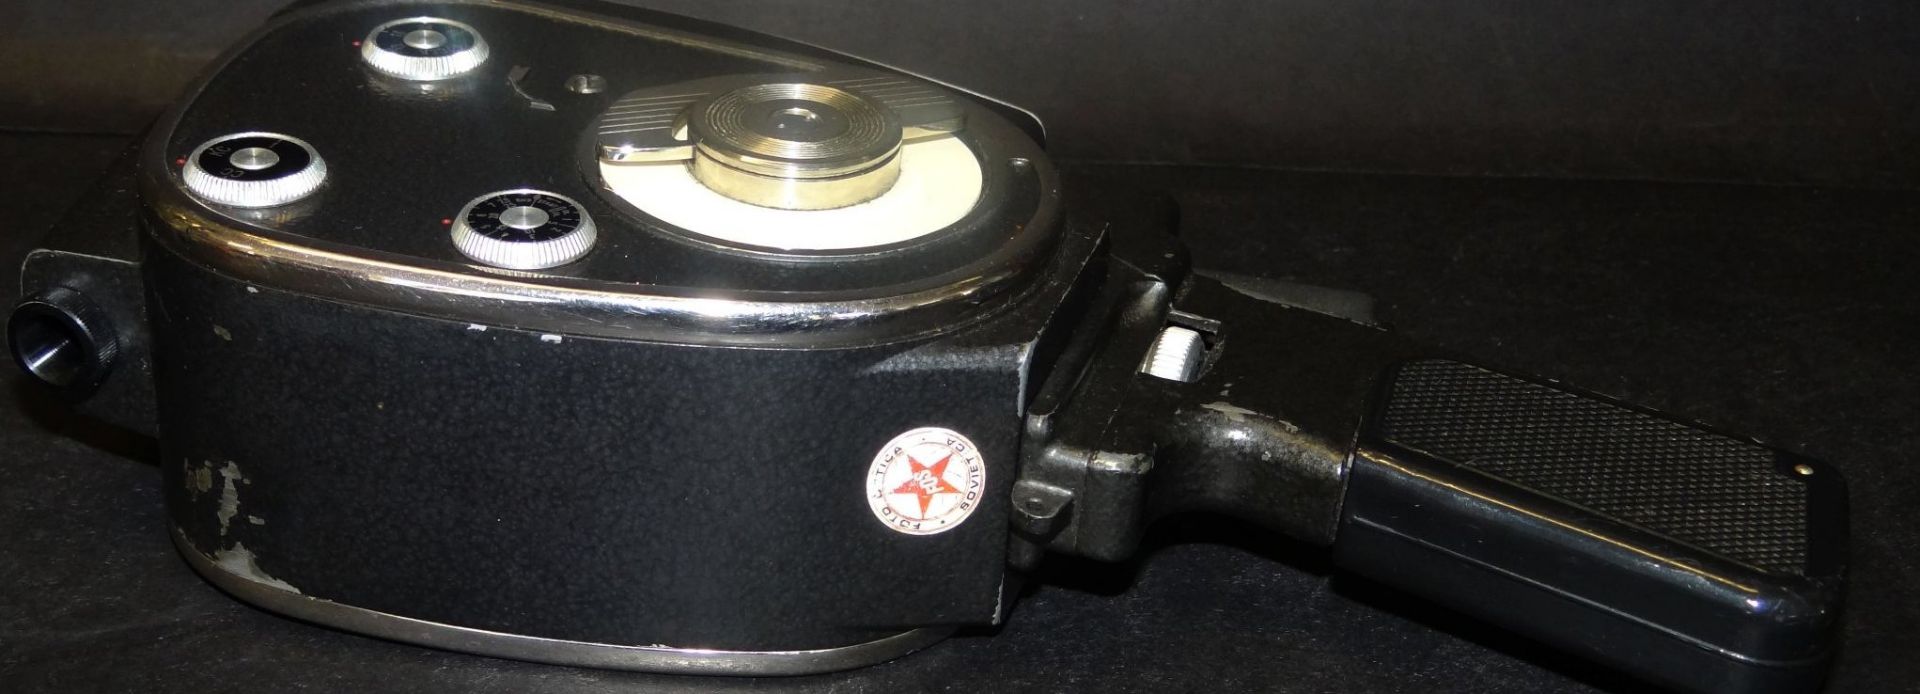 Filmkamera "Quarz M" 8 mm in orig. Tasche mit Garantieschein von 1969, Milano - Bild 5 aus 9